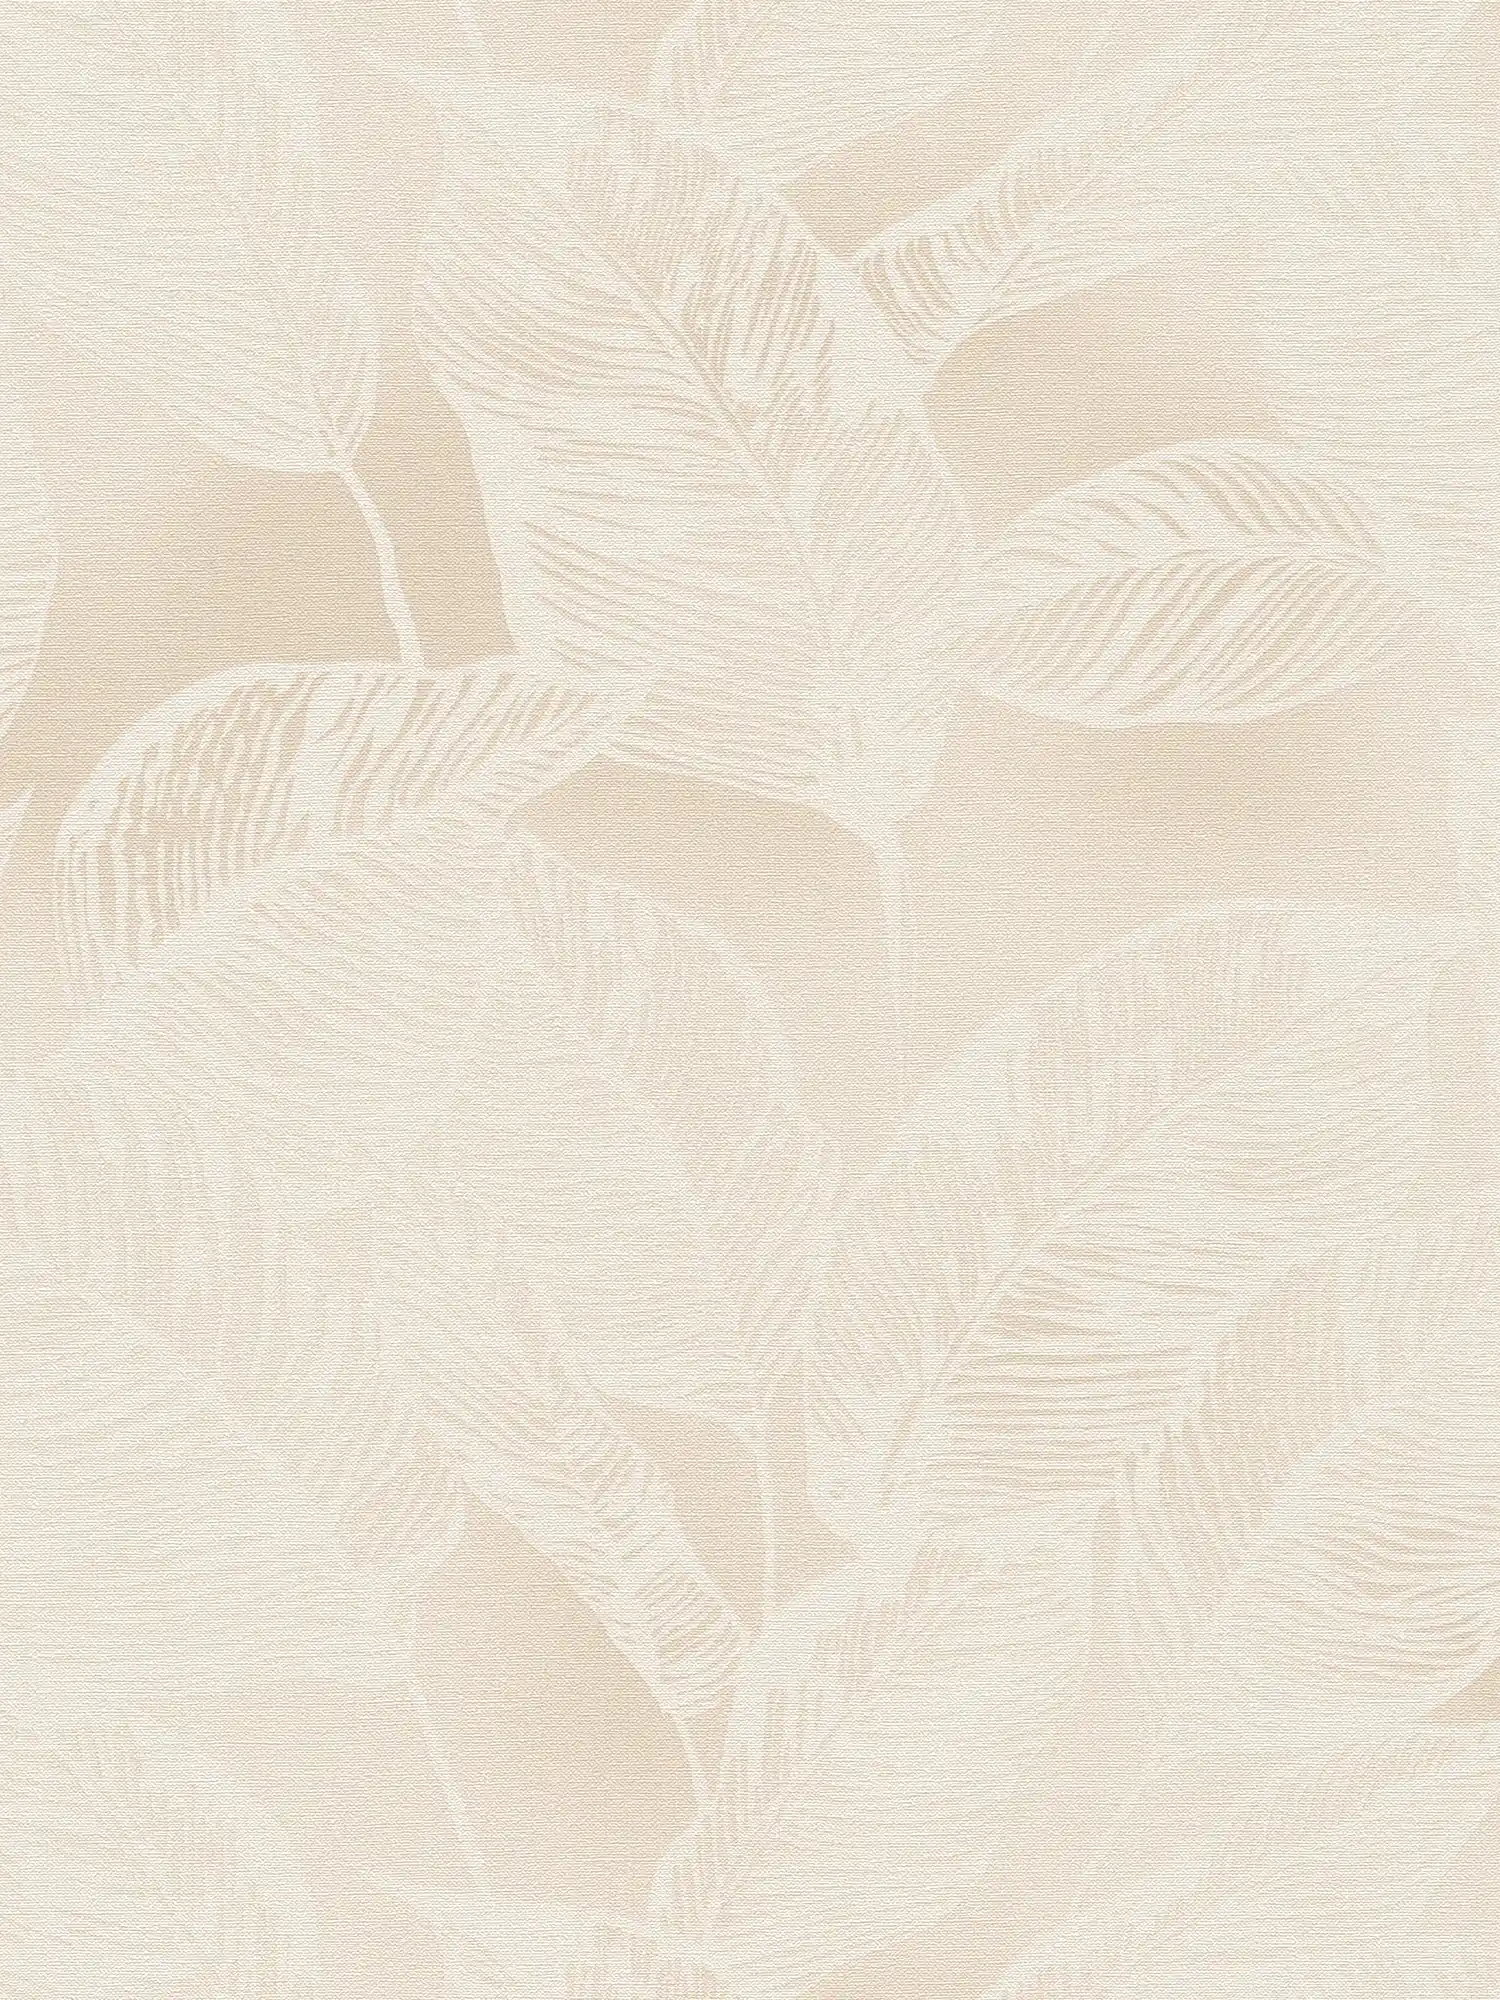 Leaf pattern non-woven wallpaper PVC-free - beige, white
